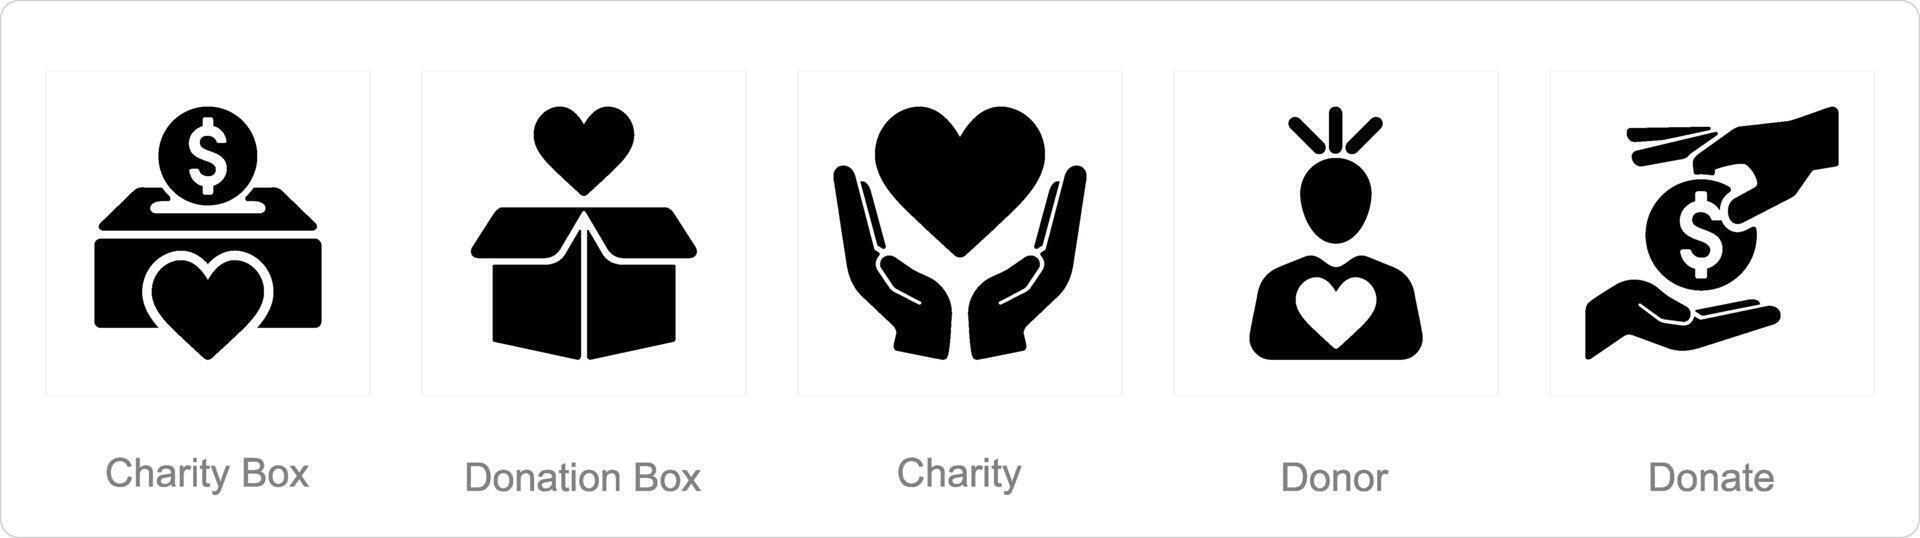 en uppsättning av 5 välgörenhet och donation ikoner som välgörenhet låda, donation låda, välgörenhet vektor